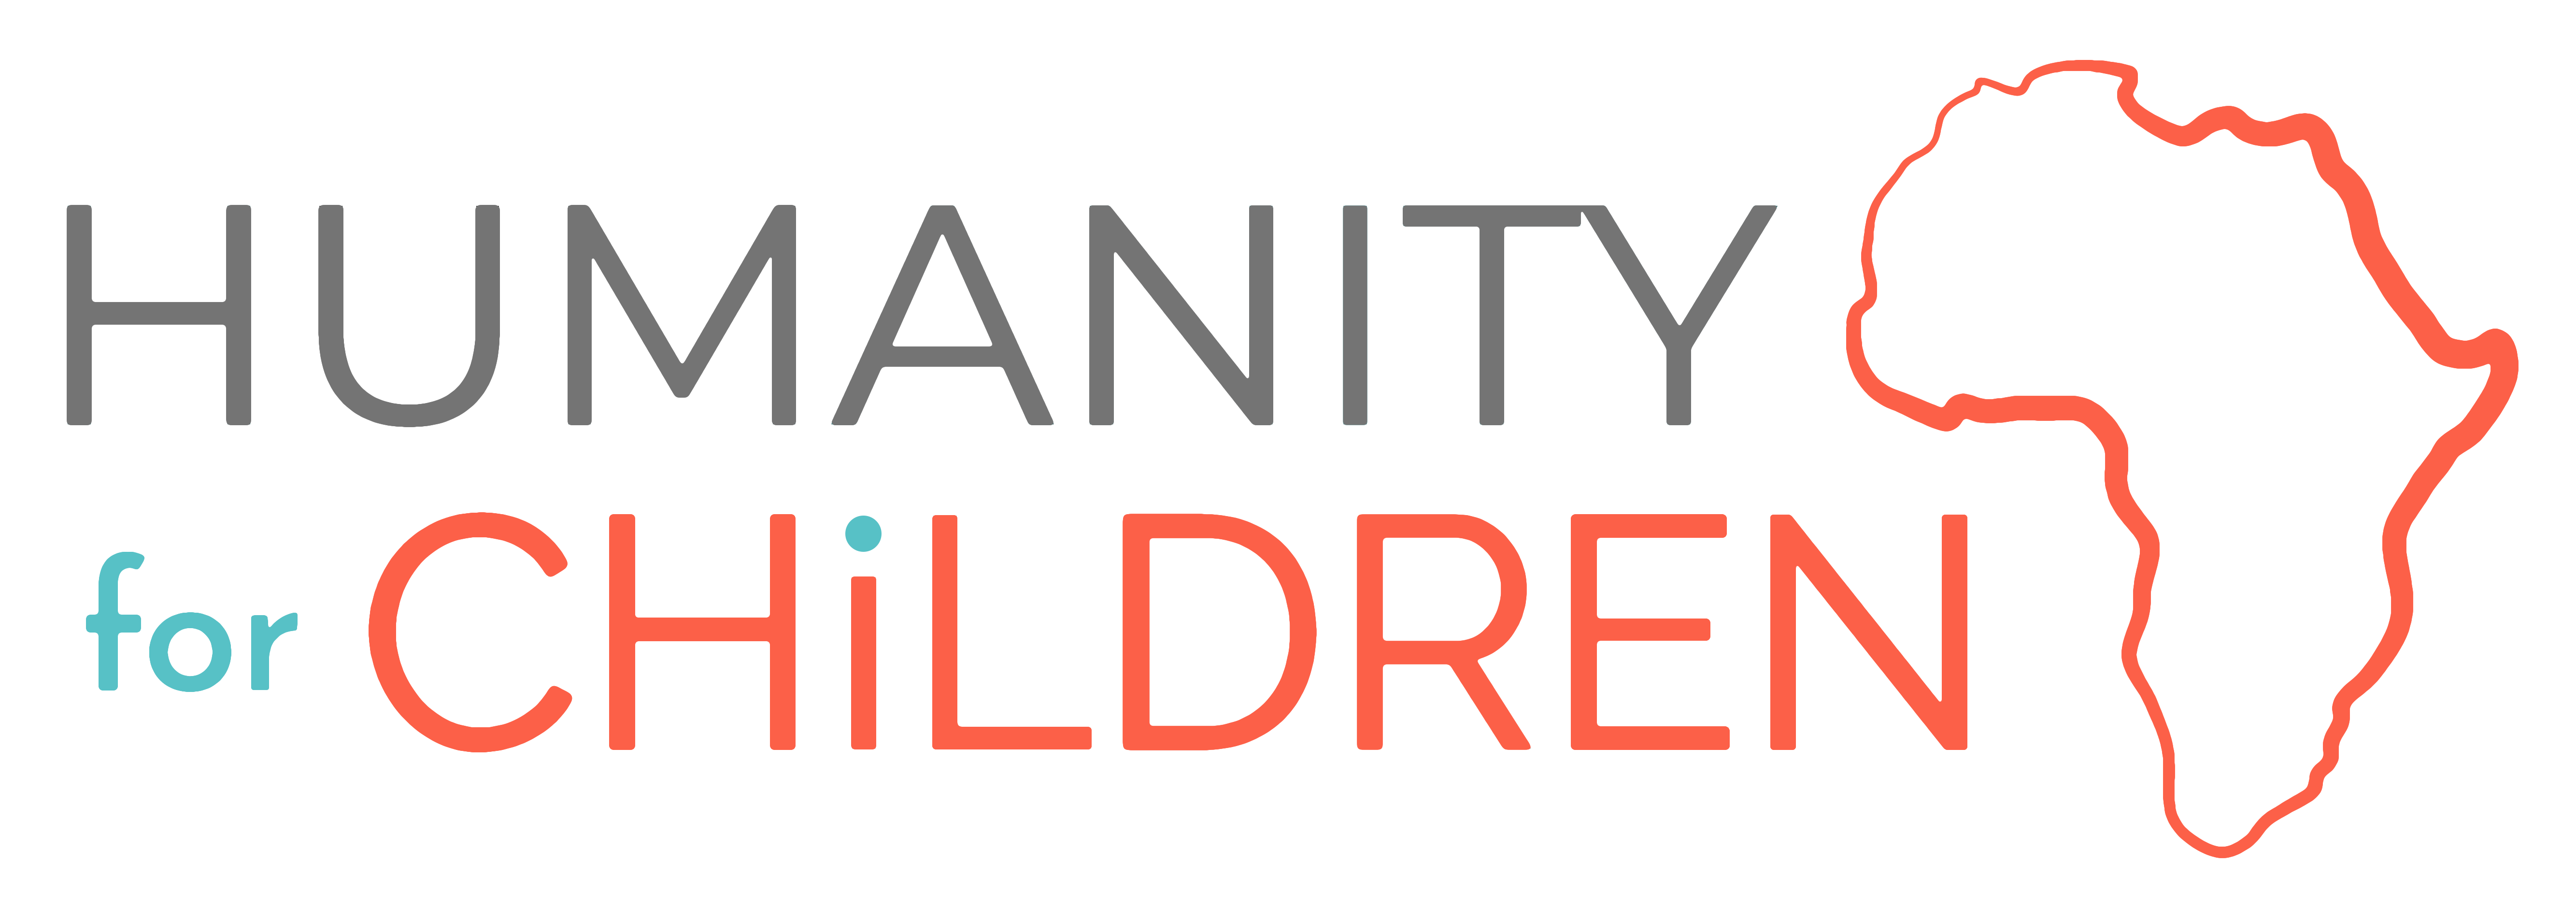 Humanity for Children logo